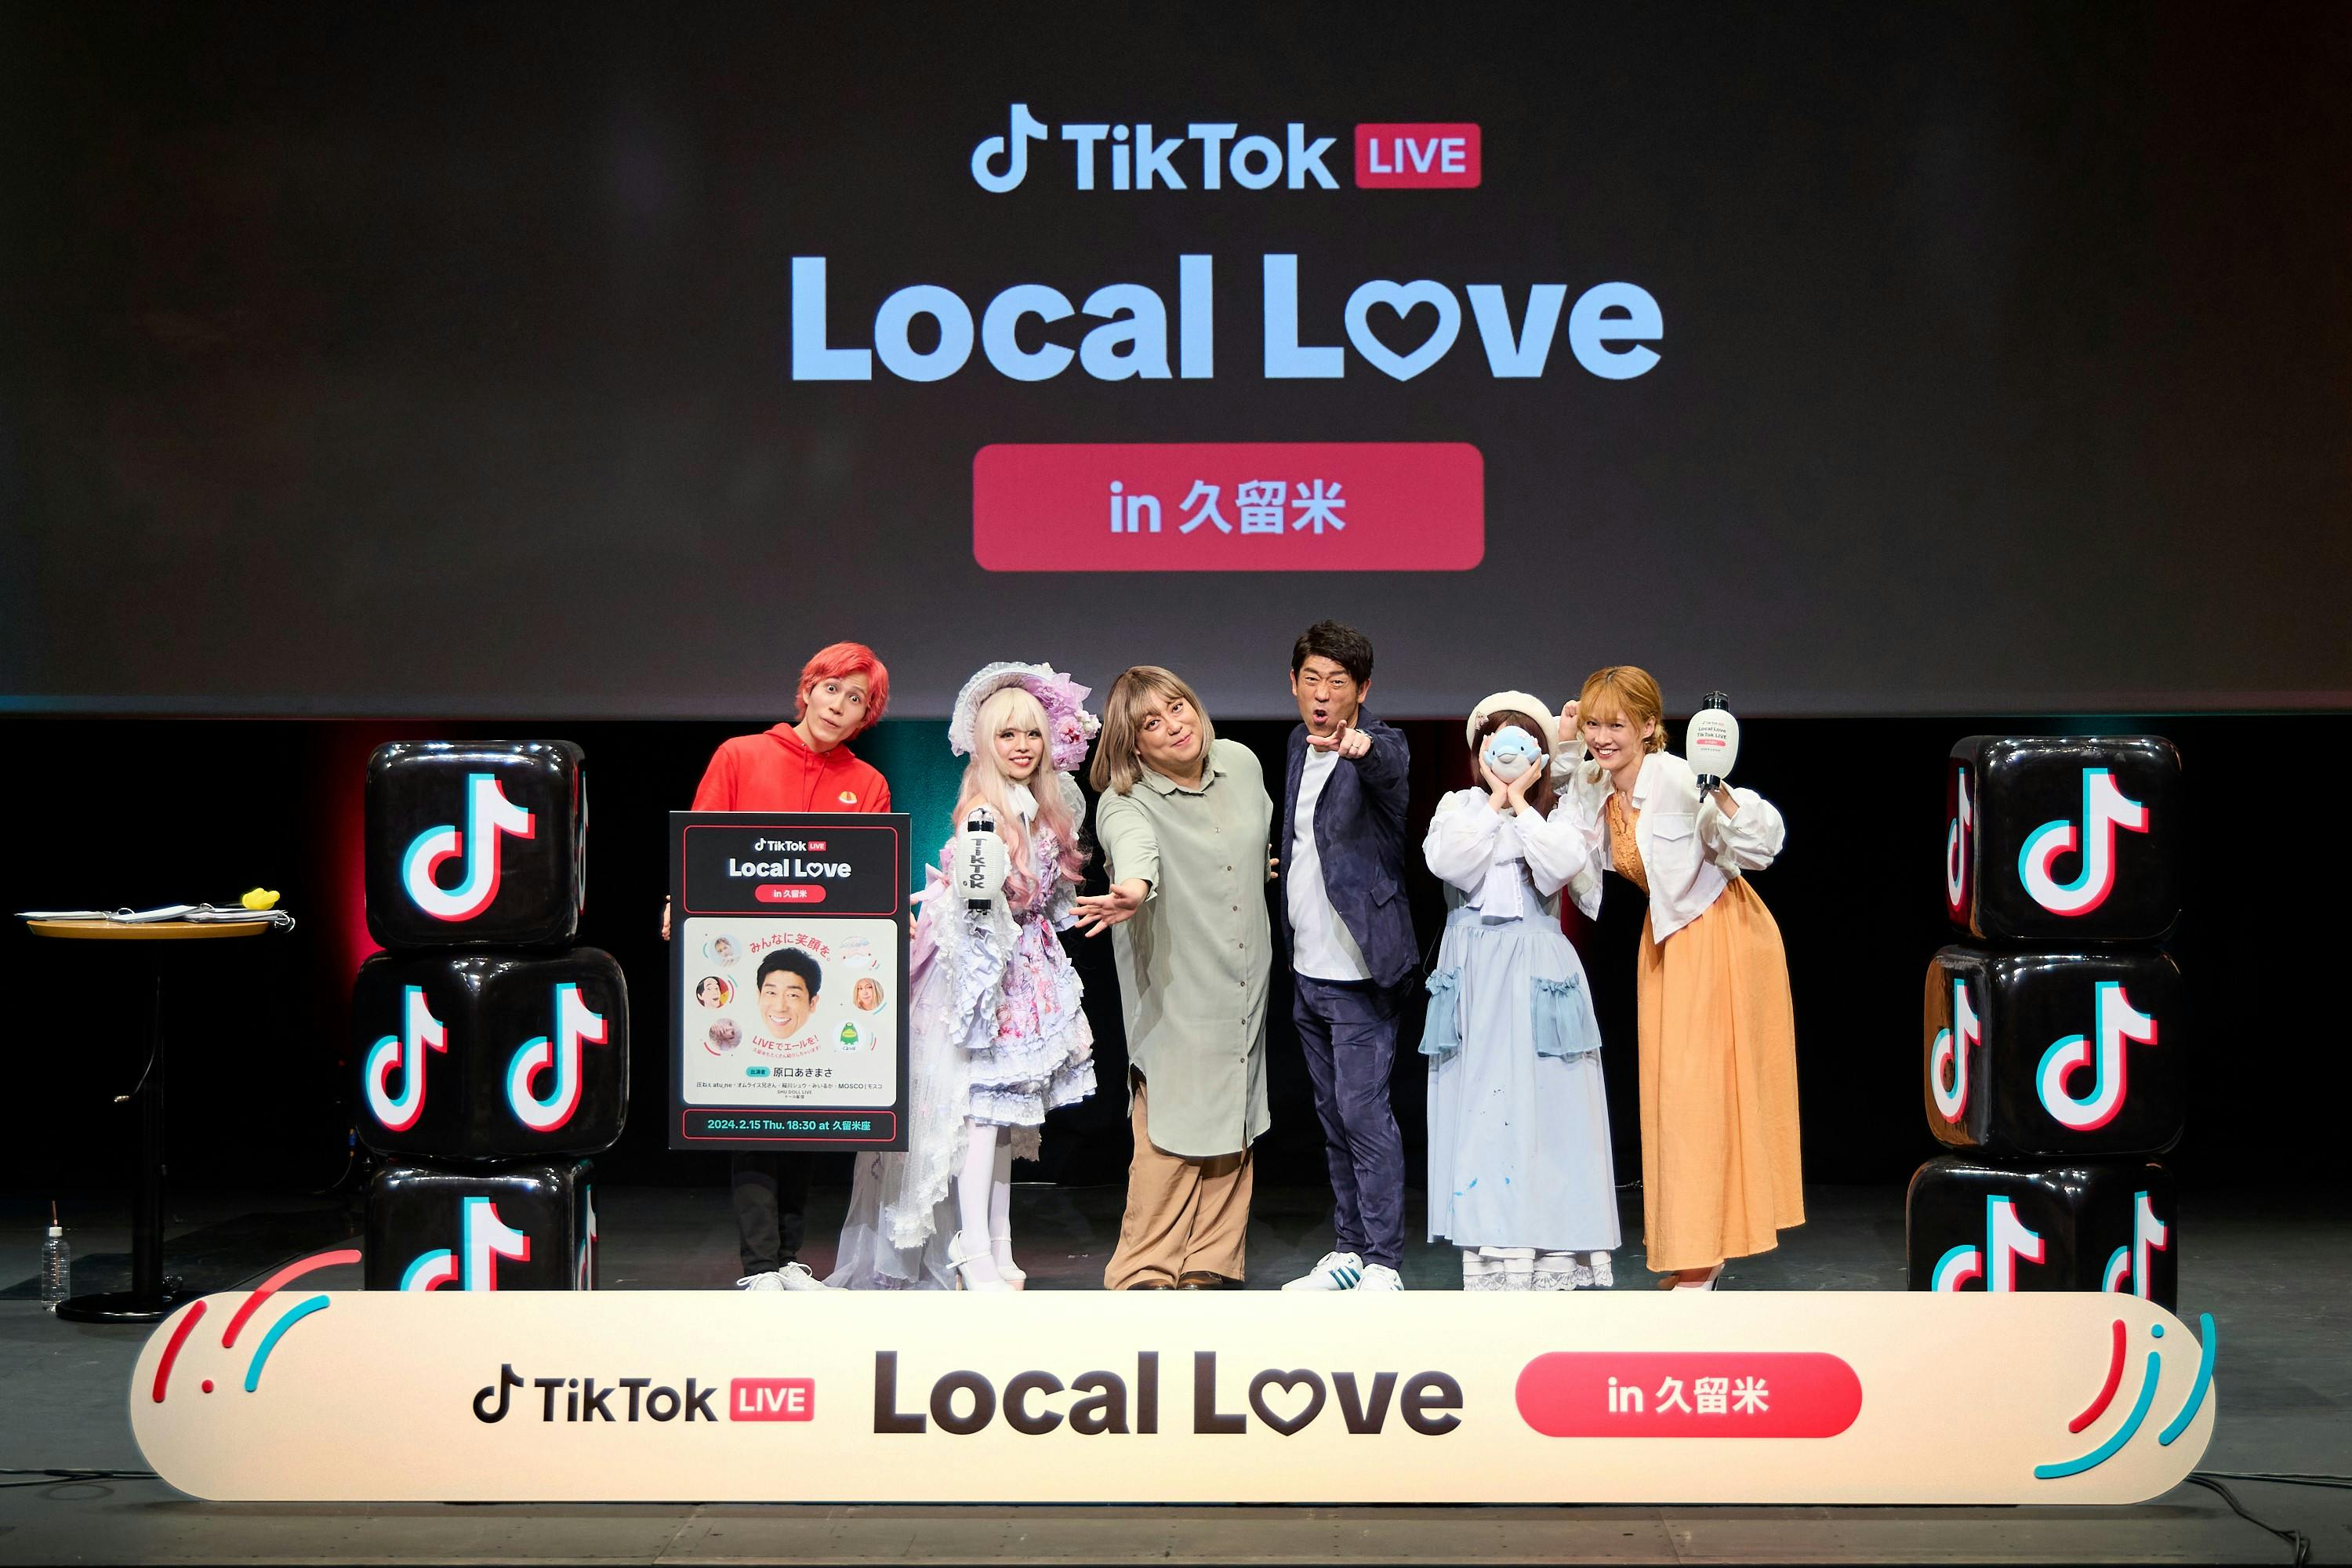 原口あきまささんと人気クリエイターたちが出演する「TikTok LIVE Local Love in 久留米」が大盛況のうちに終了！笑いで元気を届け、豪雨災害からの復興を支援